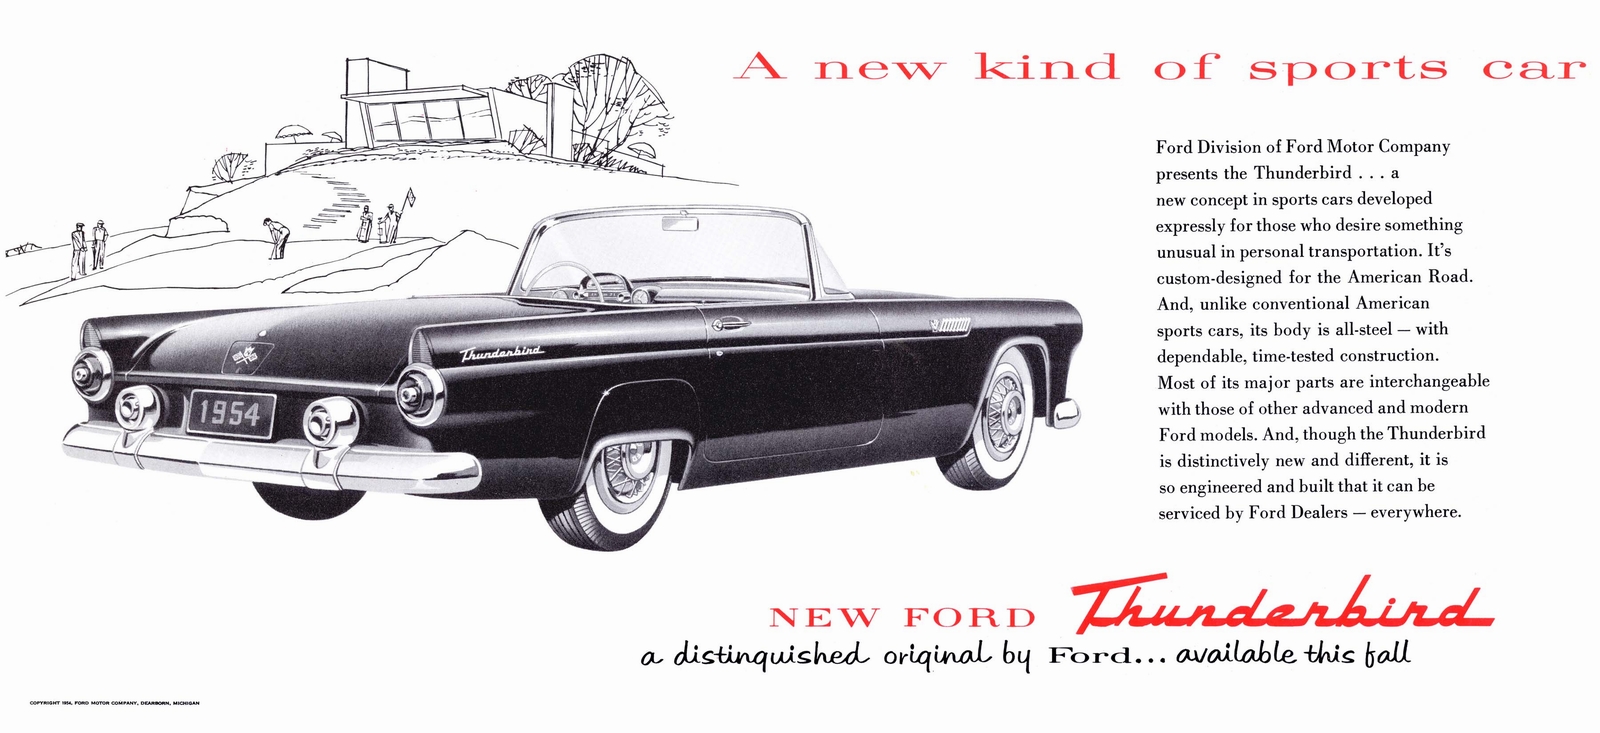 n_1955 Ford Thunderbird Introduction-02.jpg